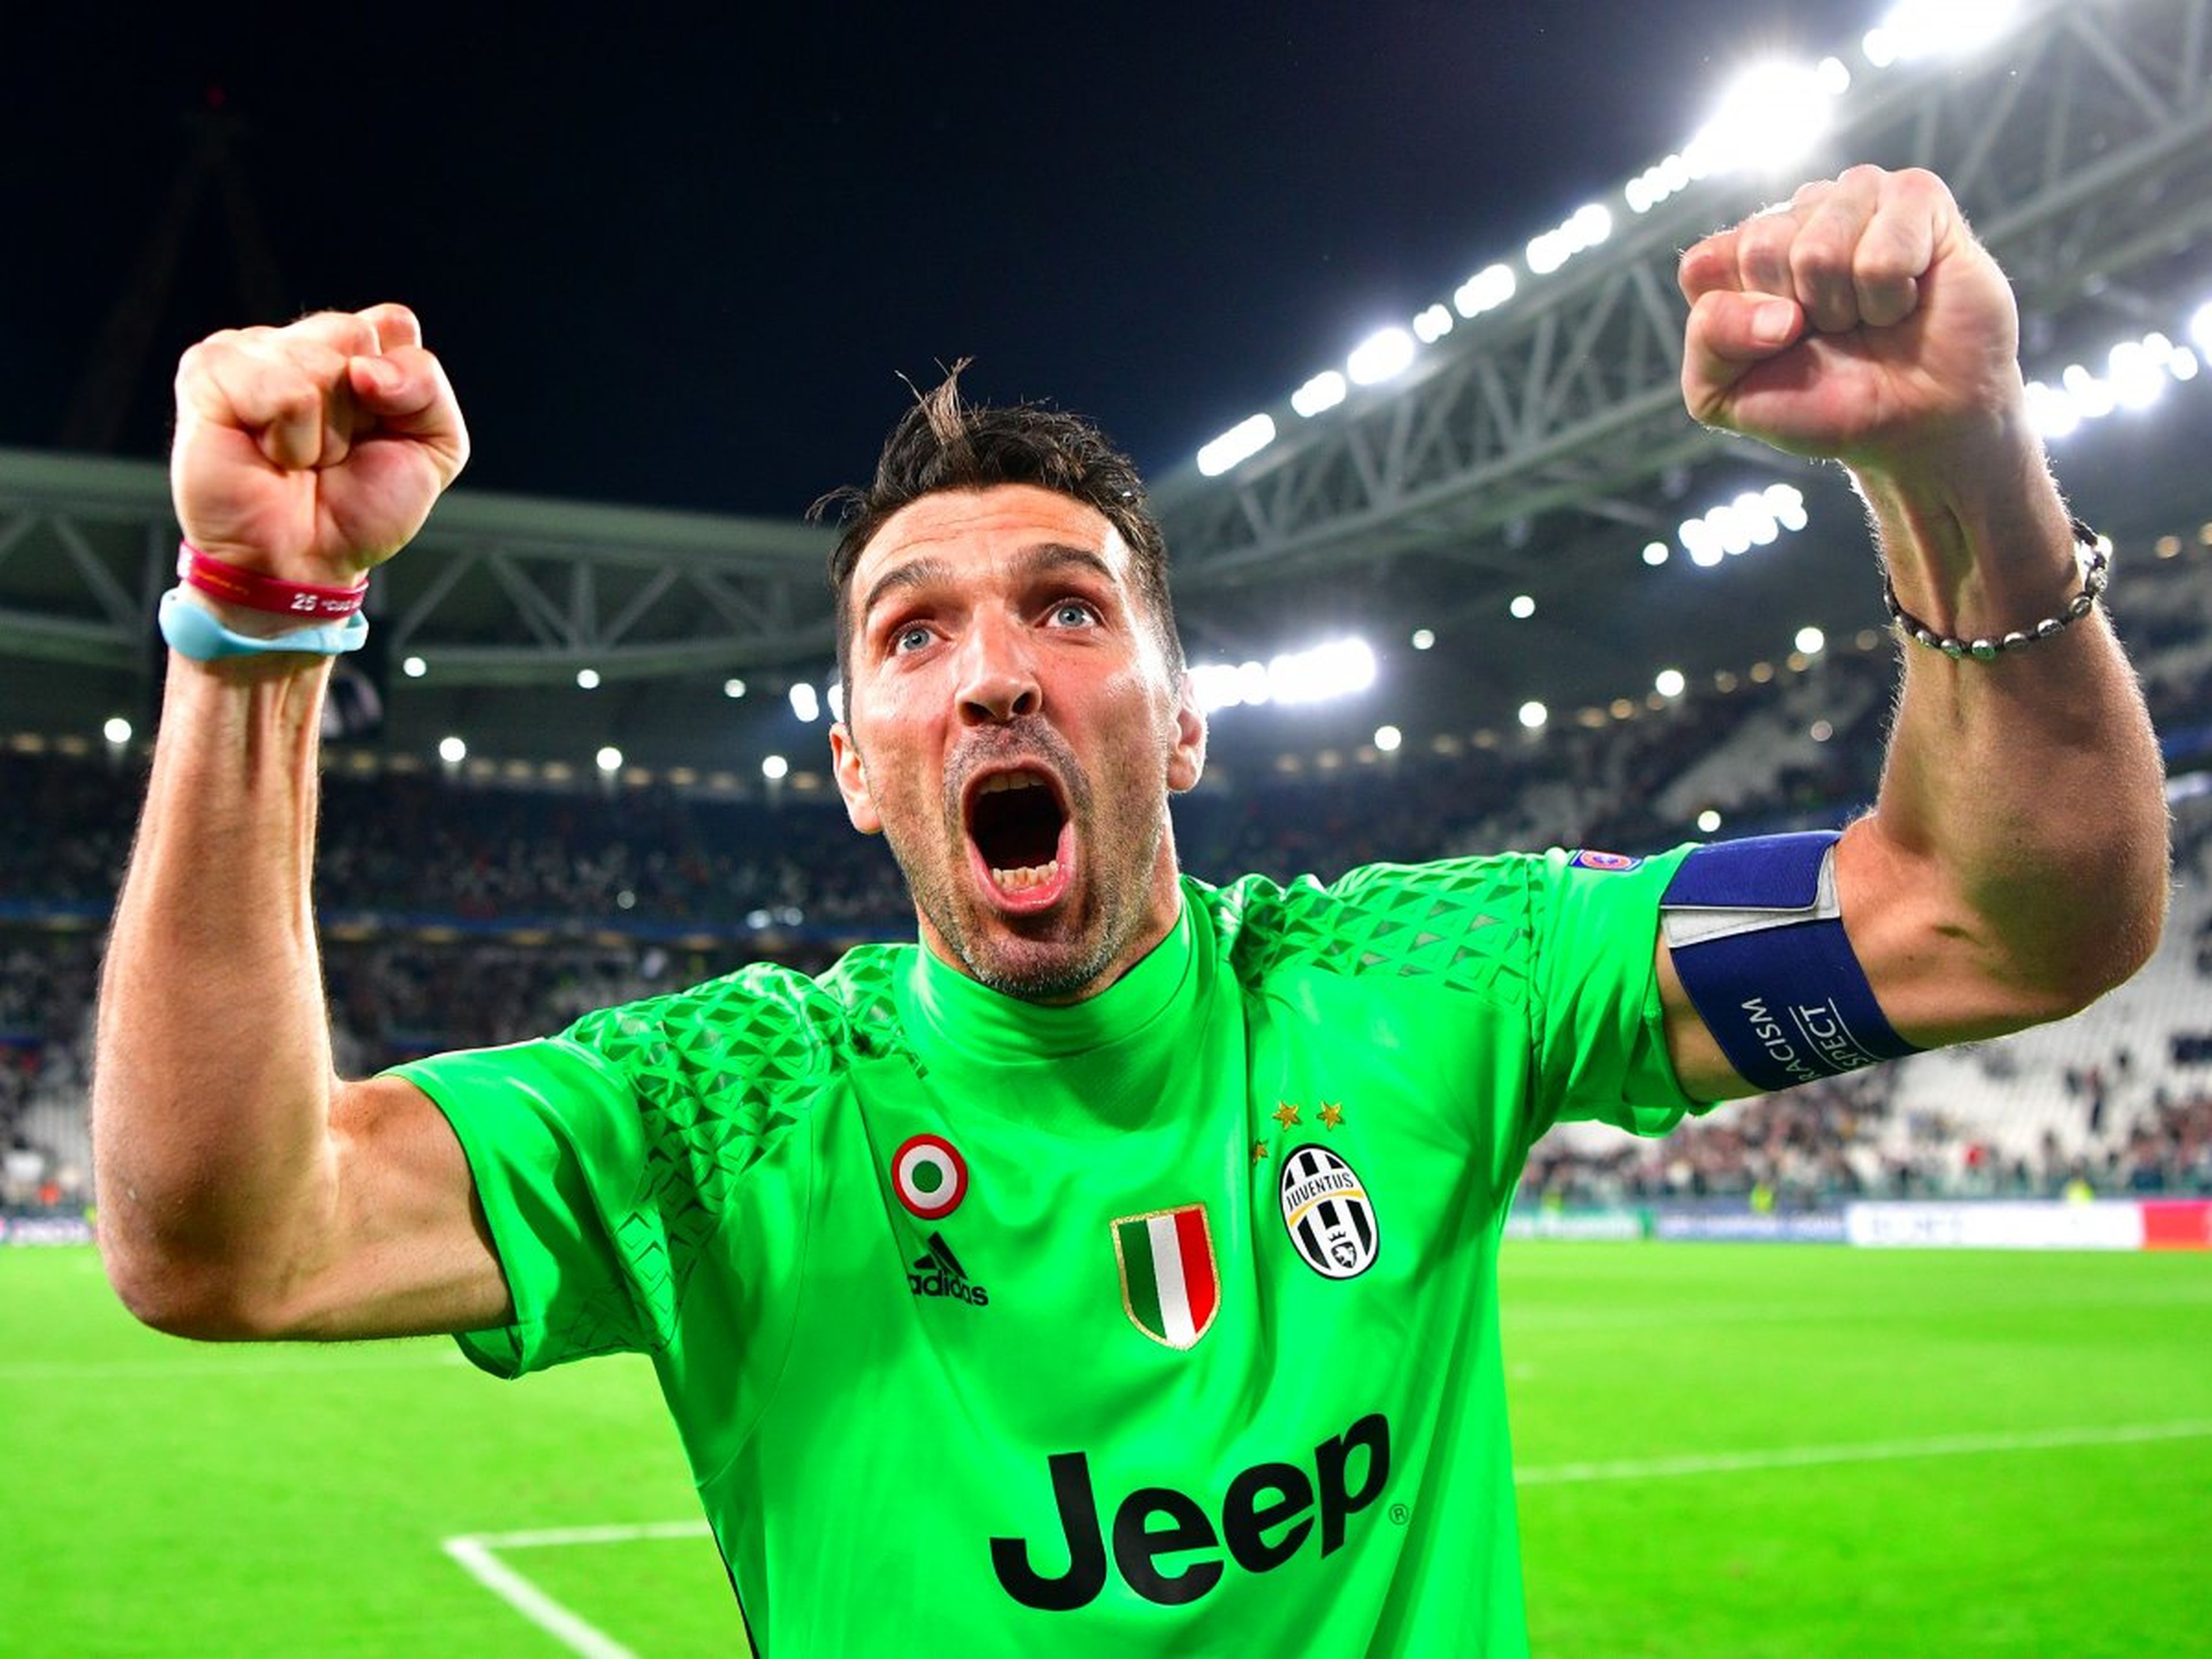 El jugador de fútbol Gianluigi Buffon de la Juventus celebra una victoria.